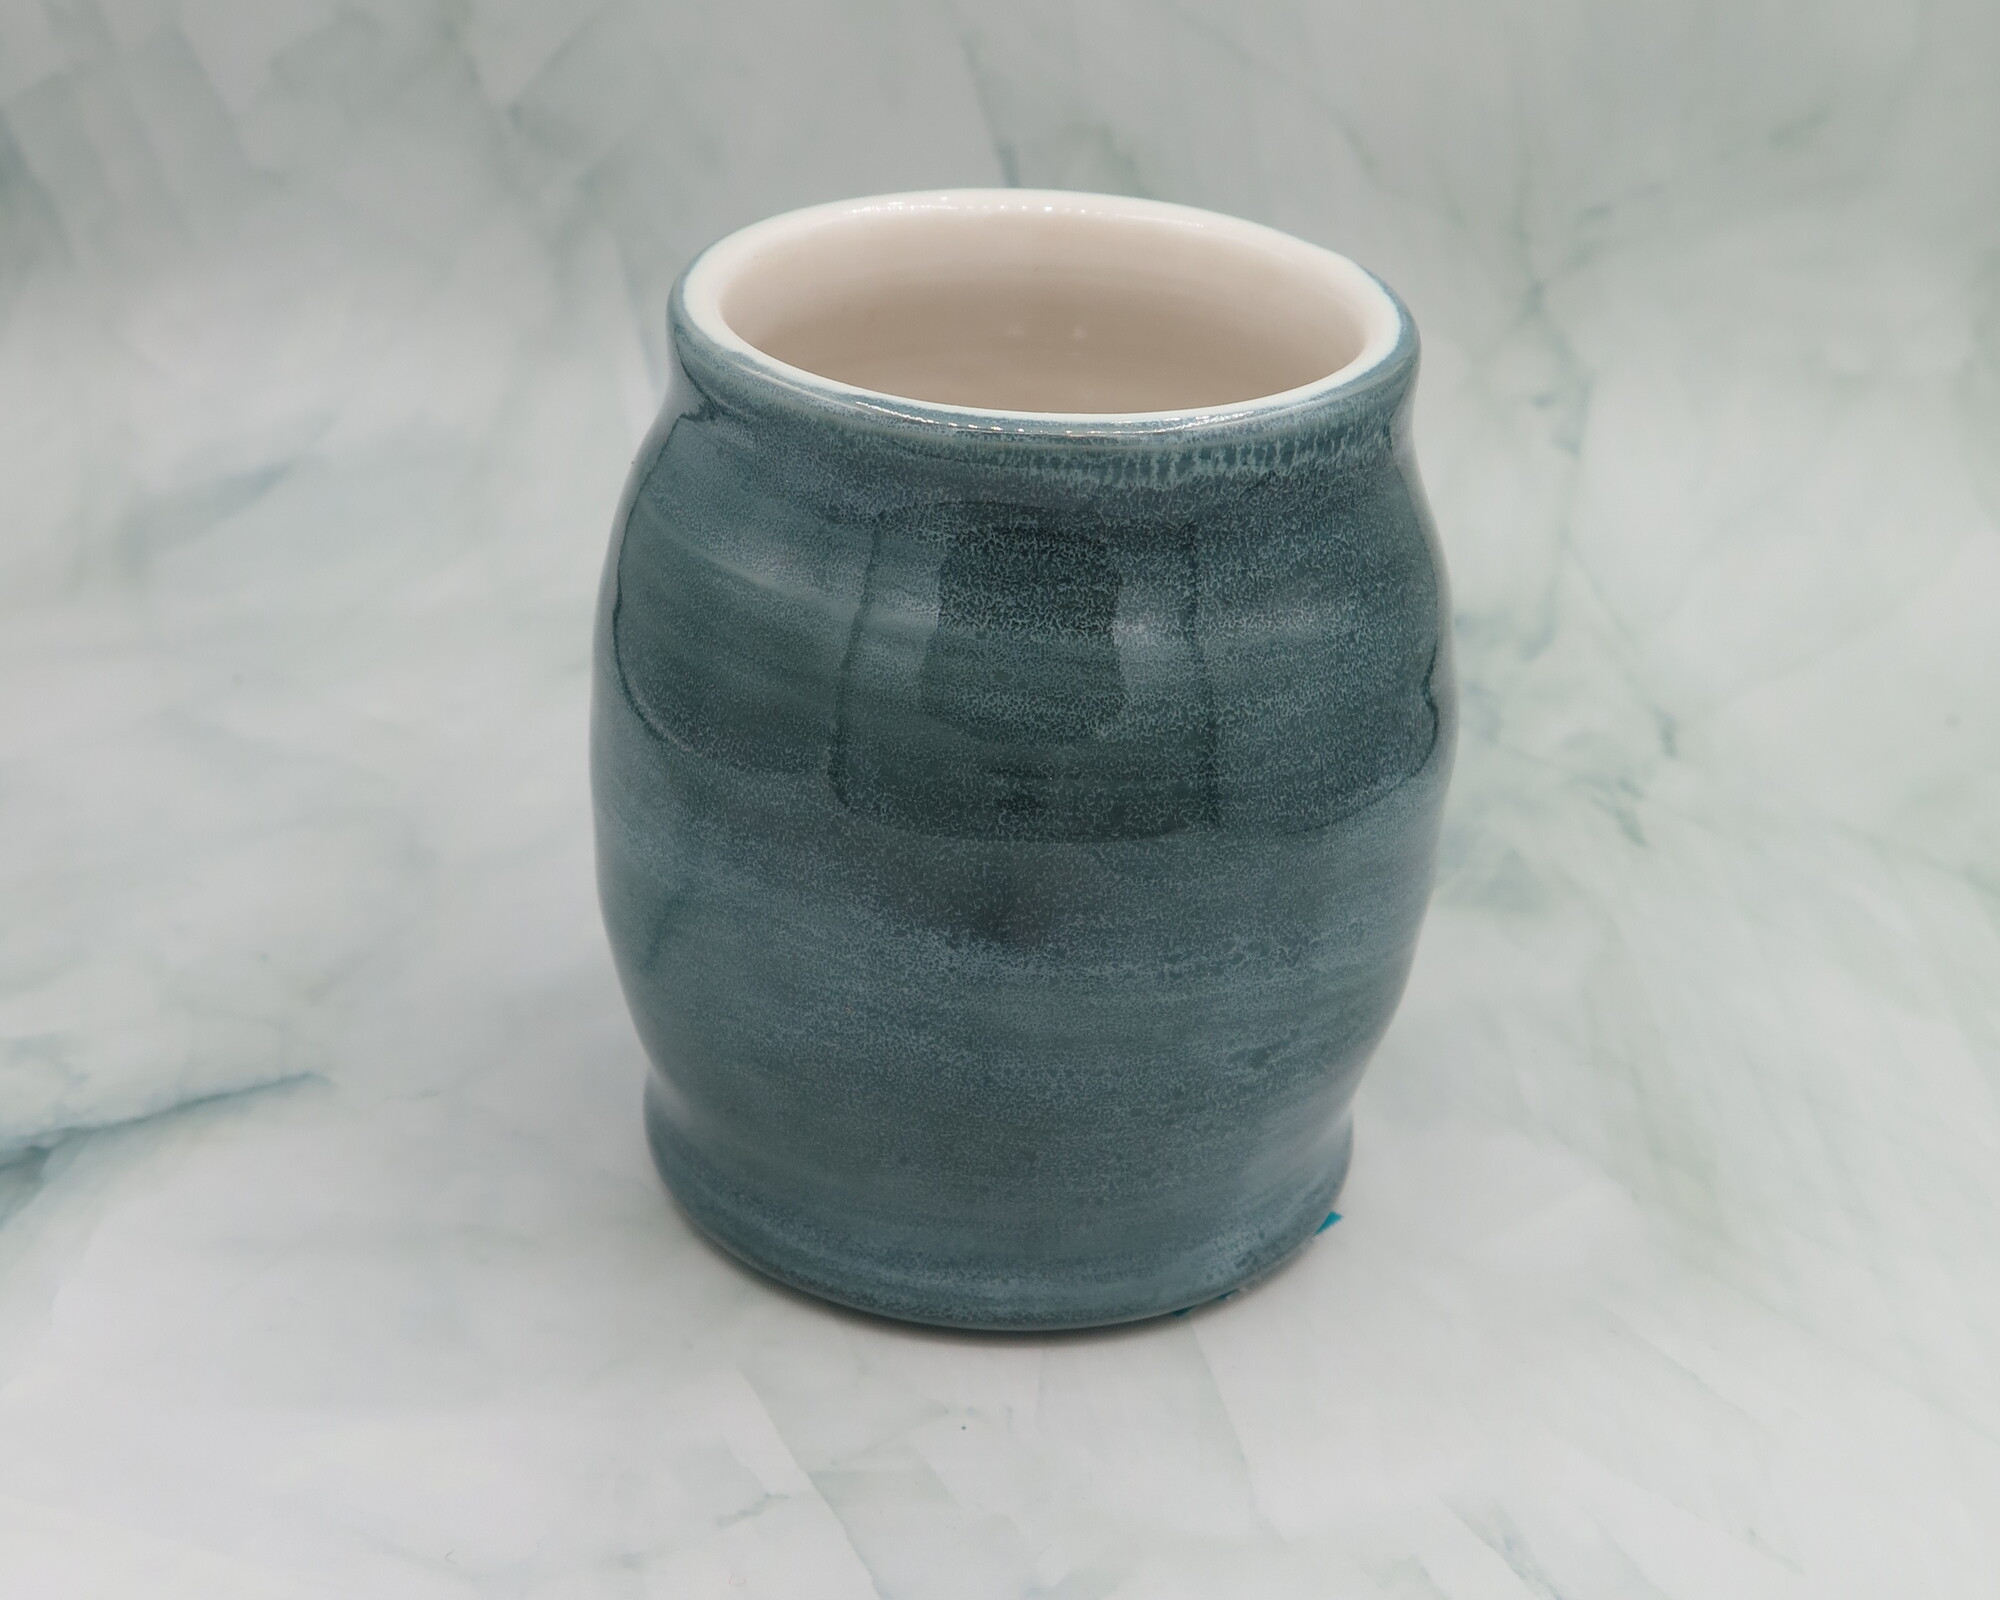 Vase, Teal/Wht, Size: 4.5x3.25